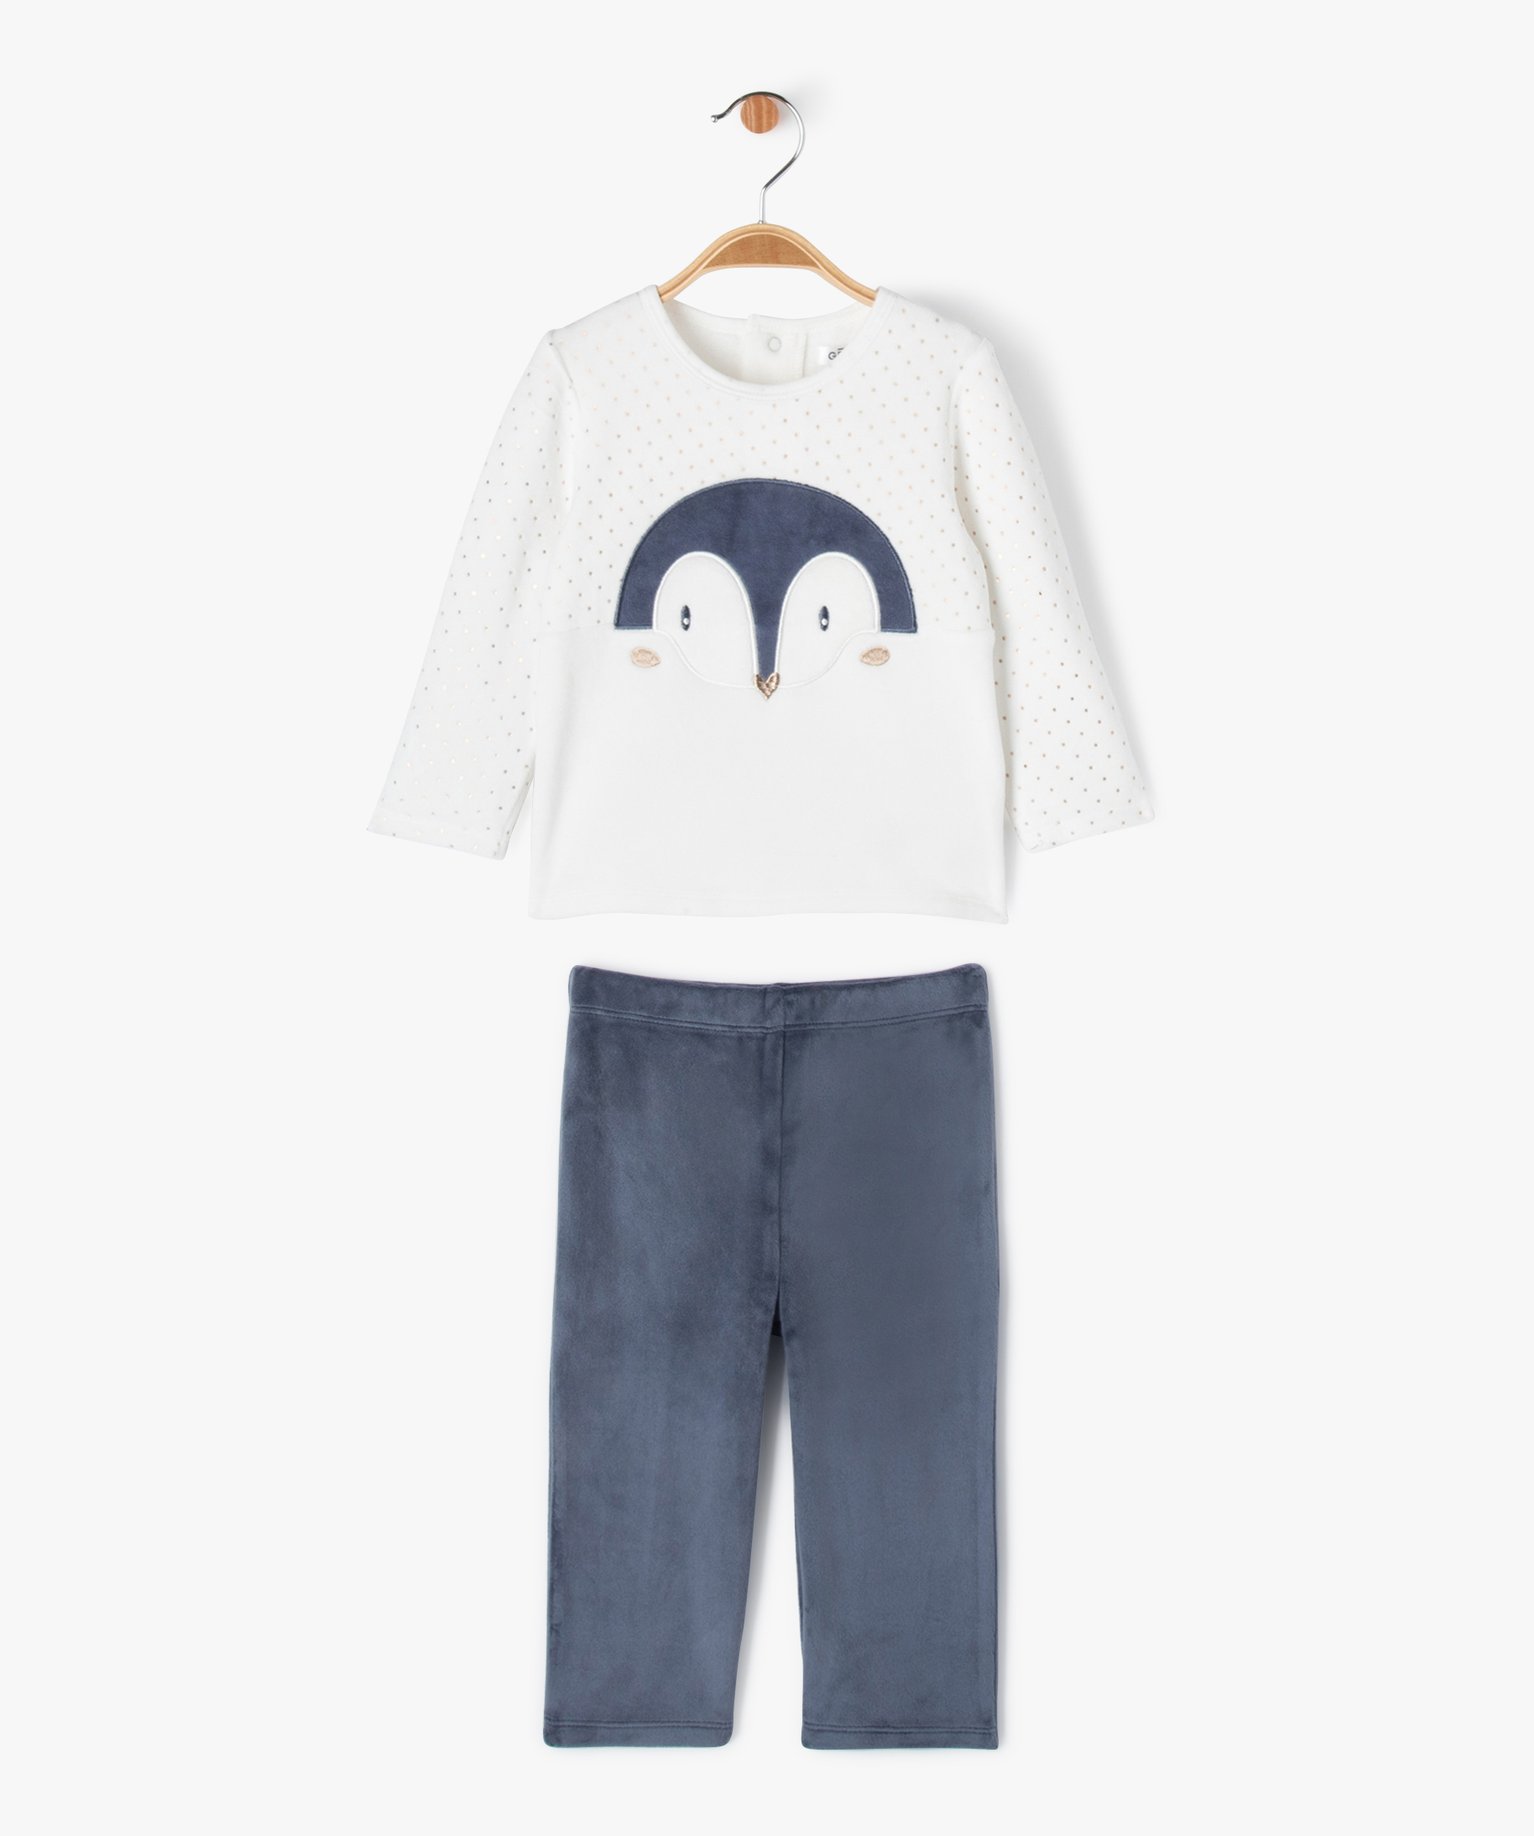 Pyjama 2 pièces en velours avec touches pailletées bébé fille - 12M - marine - GEMO